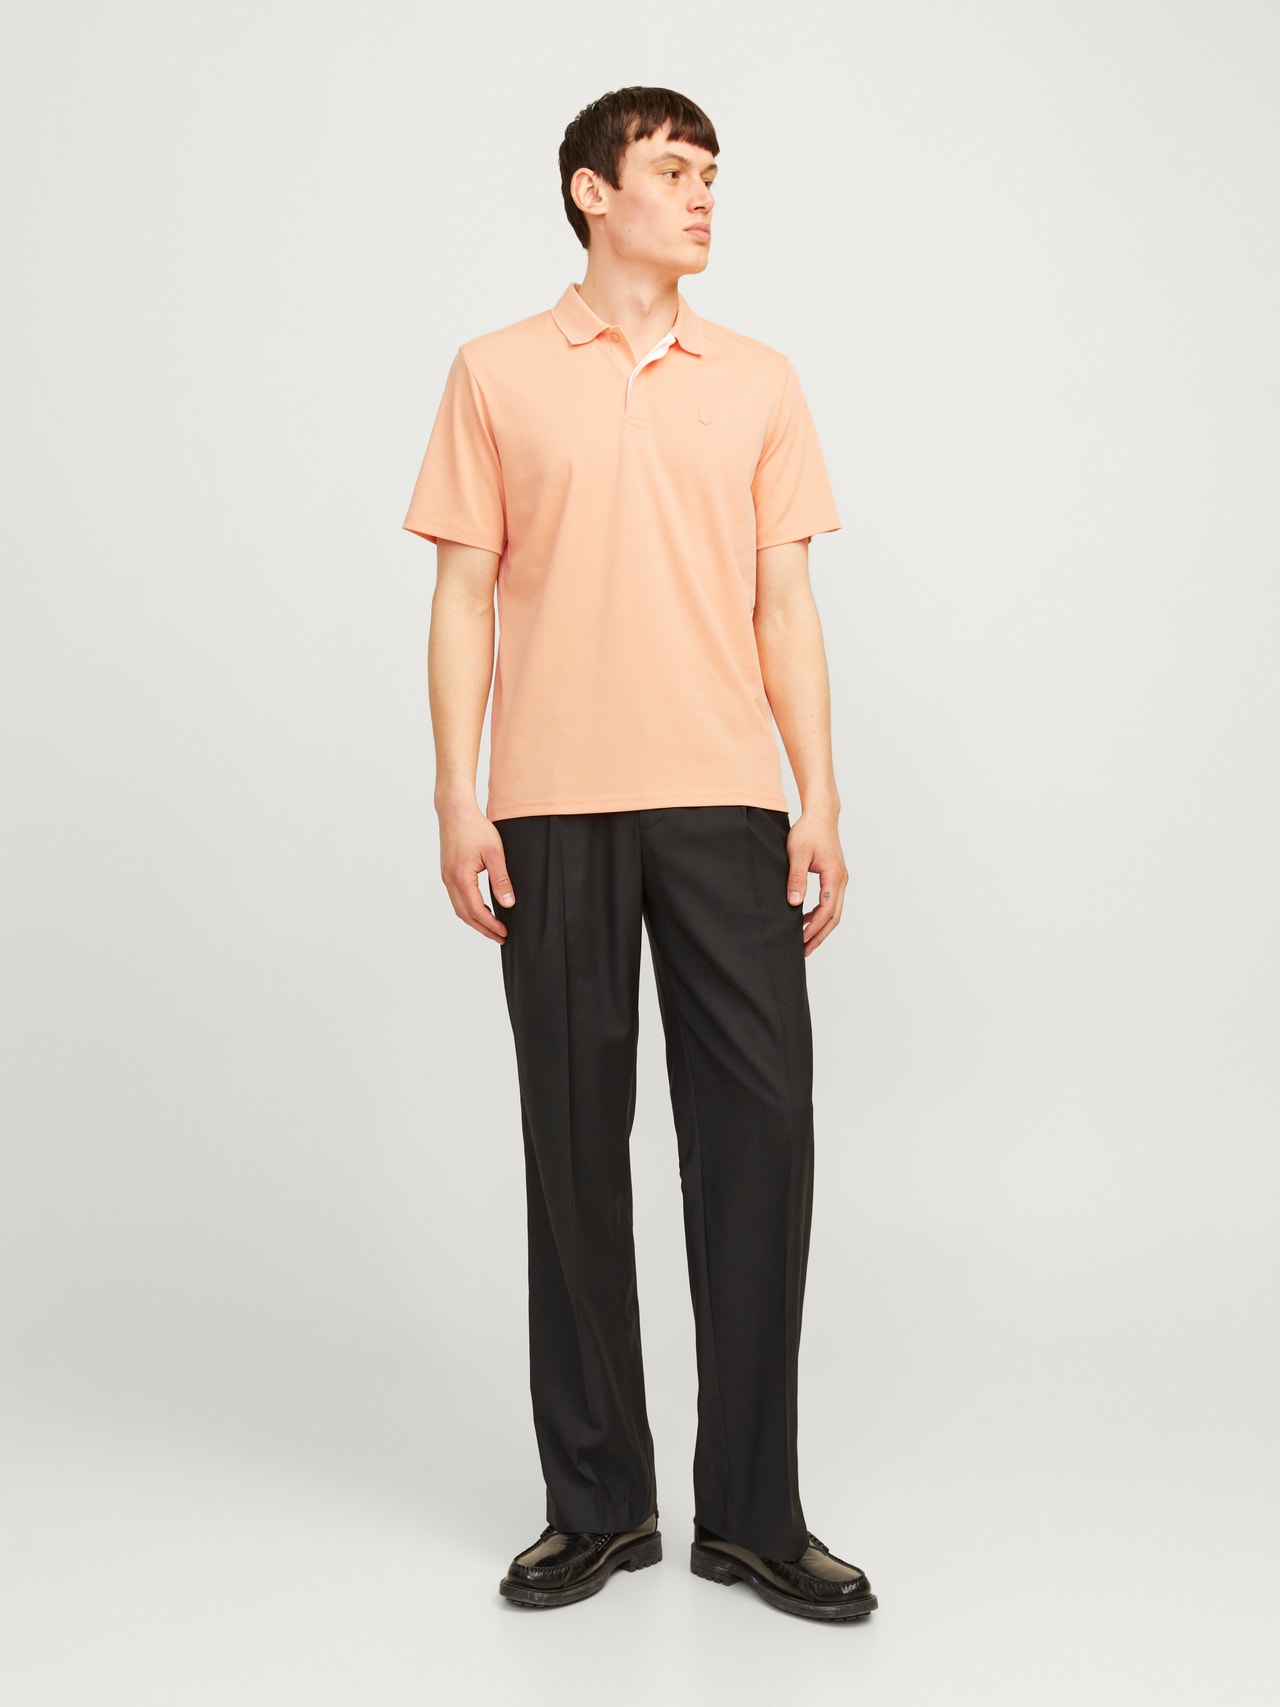 Jack & Jones Enfärgat Polo T-shirt -Peach Nougat - 12251180